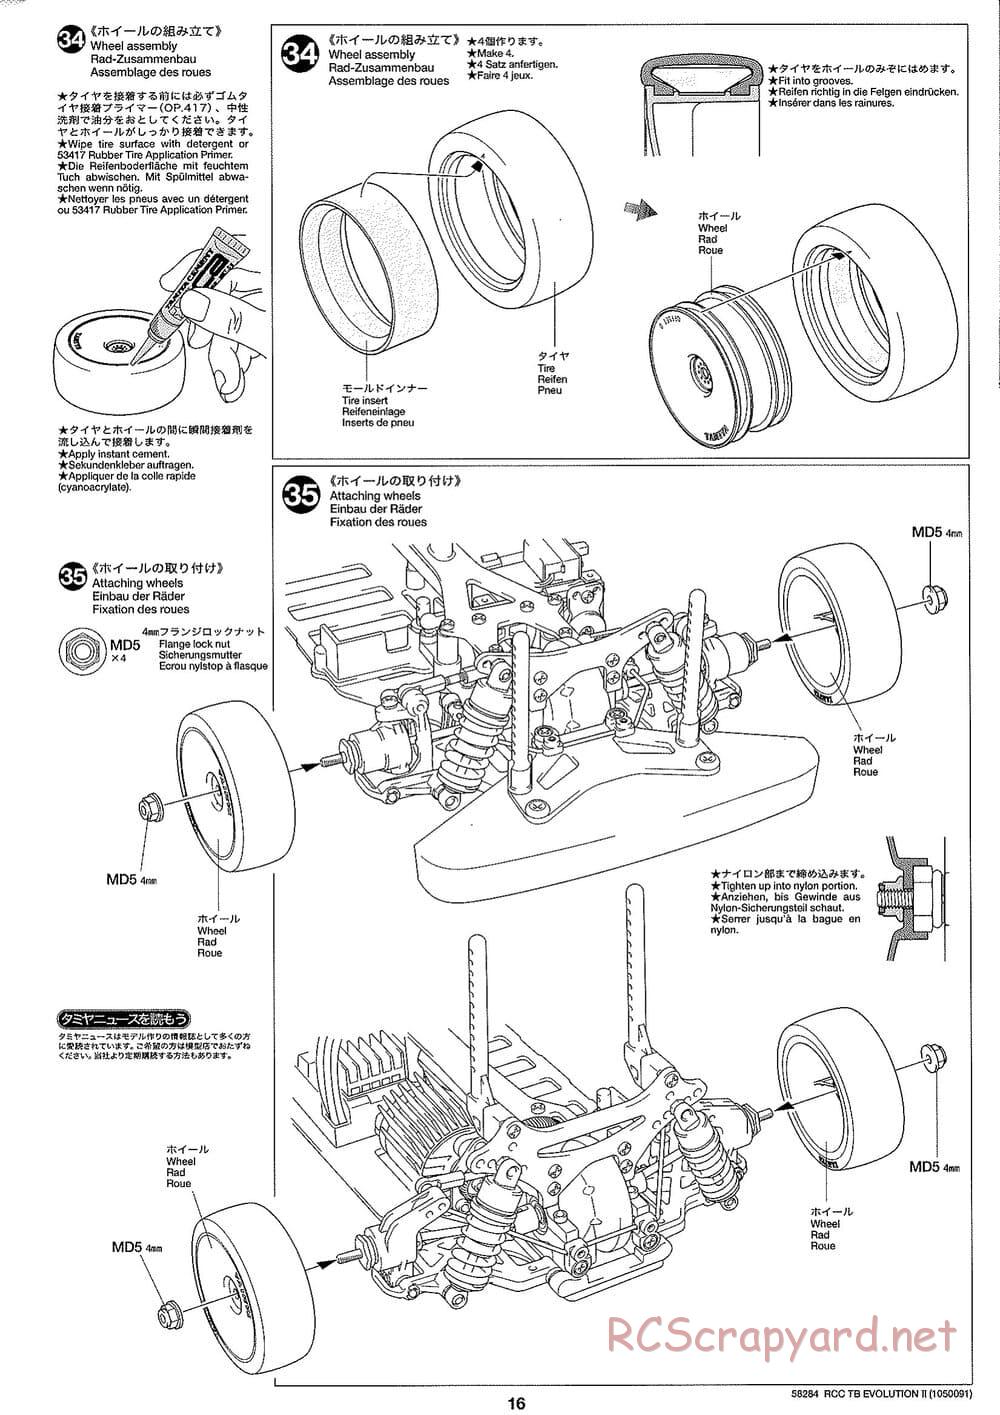 Tamiya - TB Evolution II Chassis - Manual - Page 16